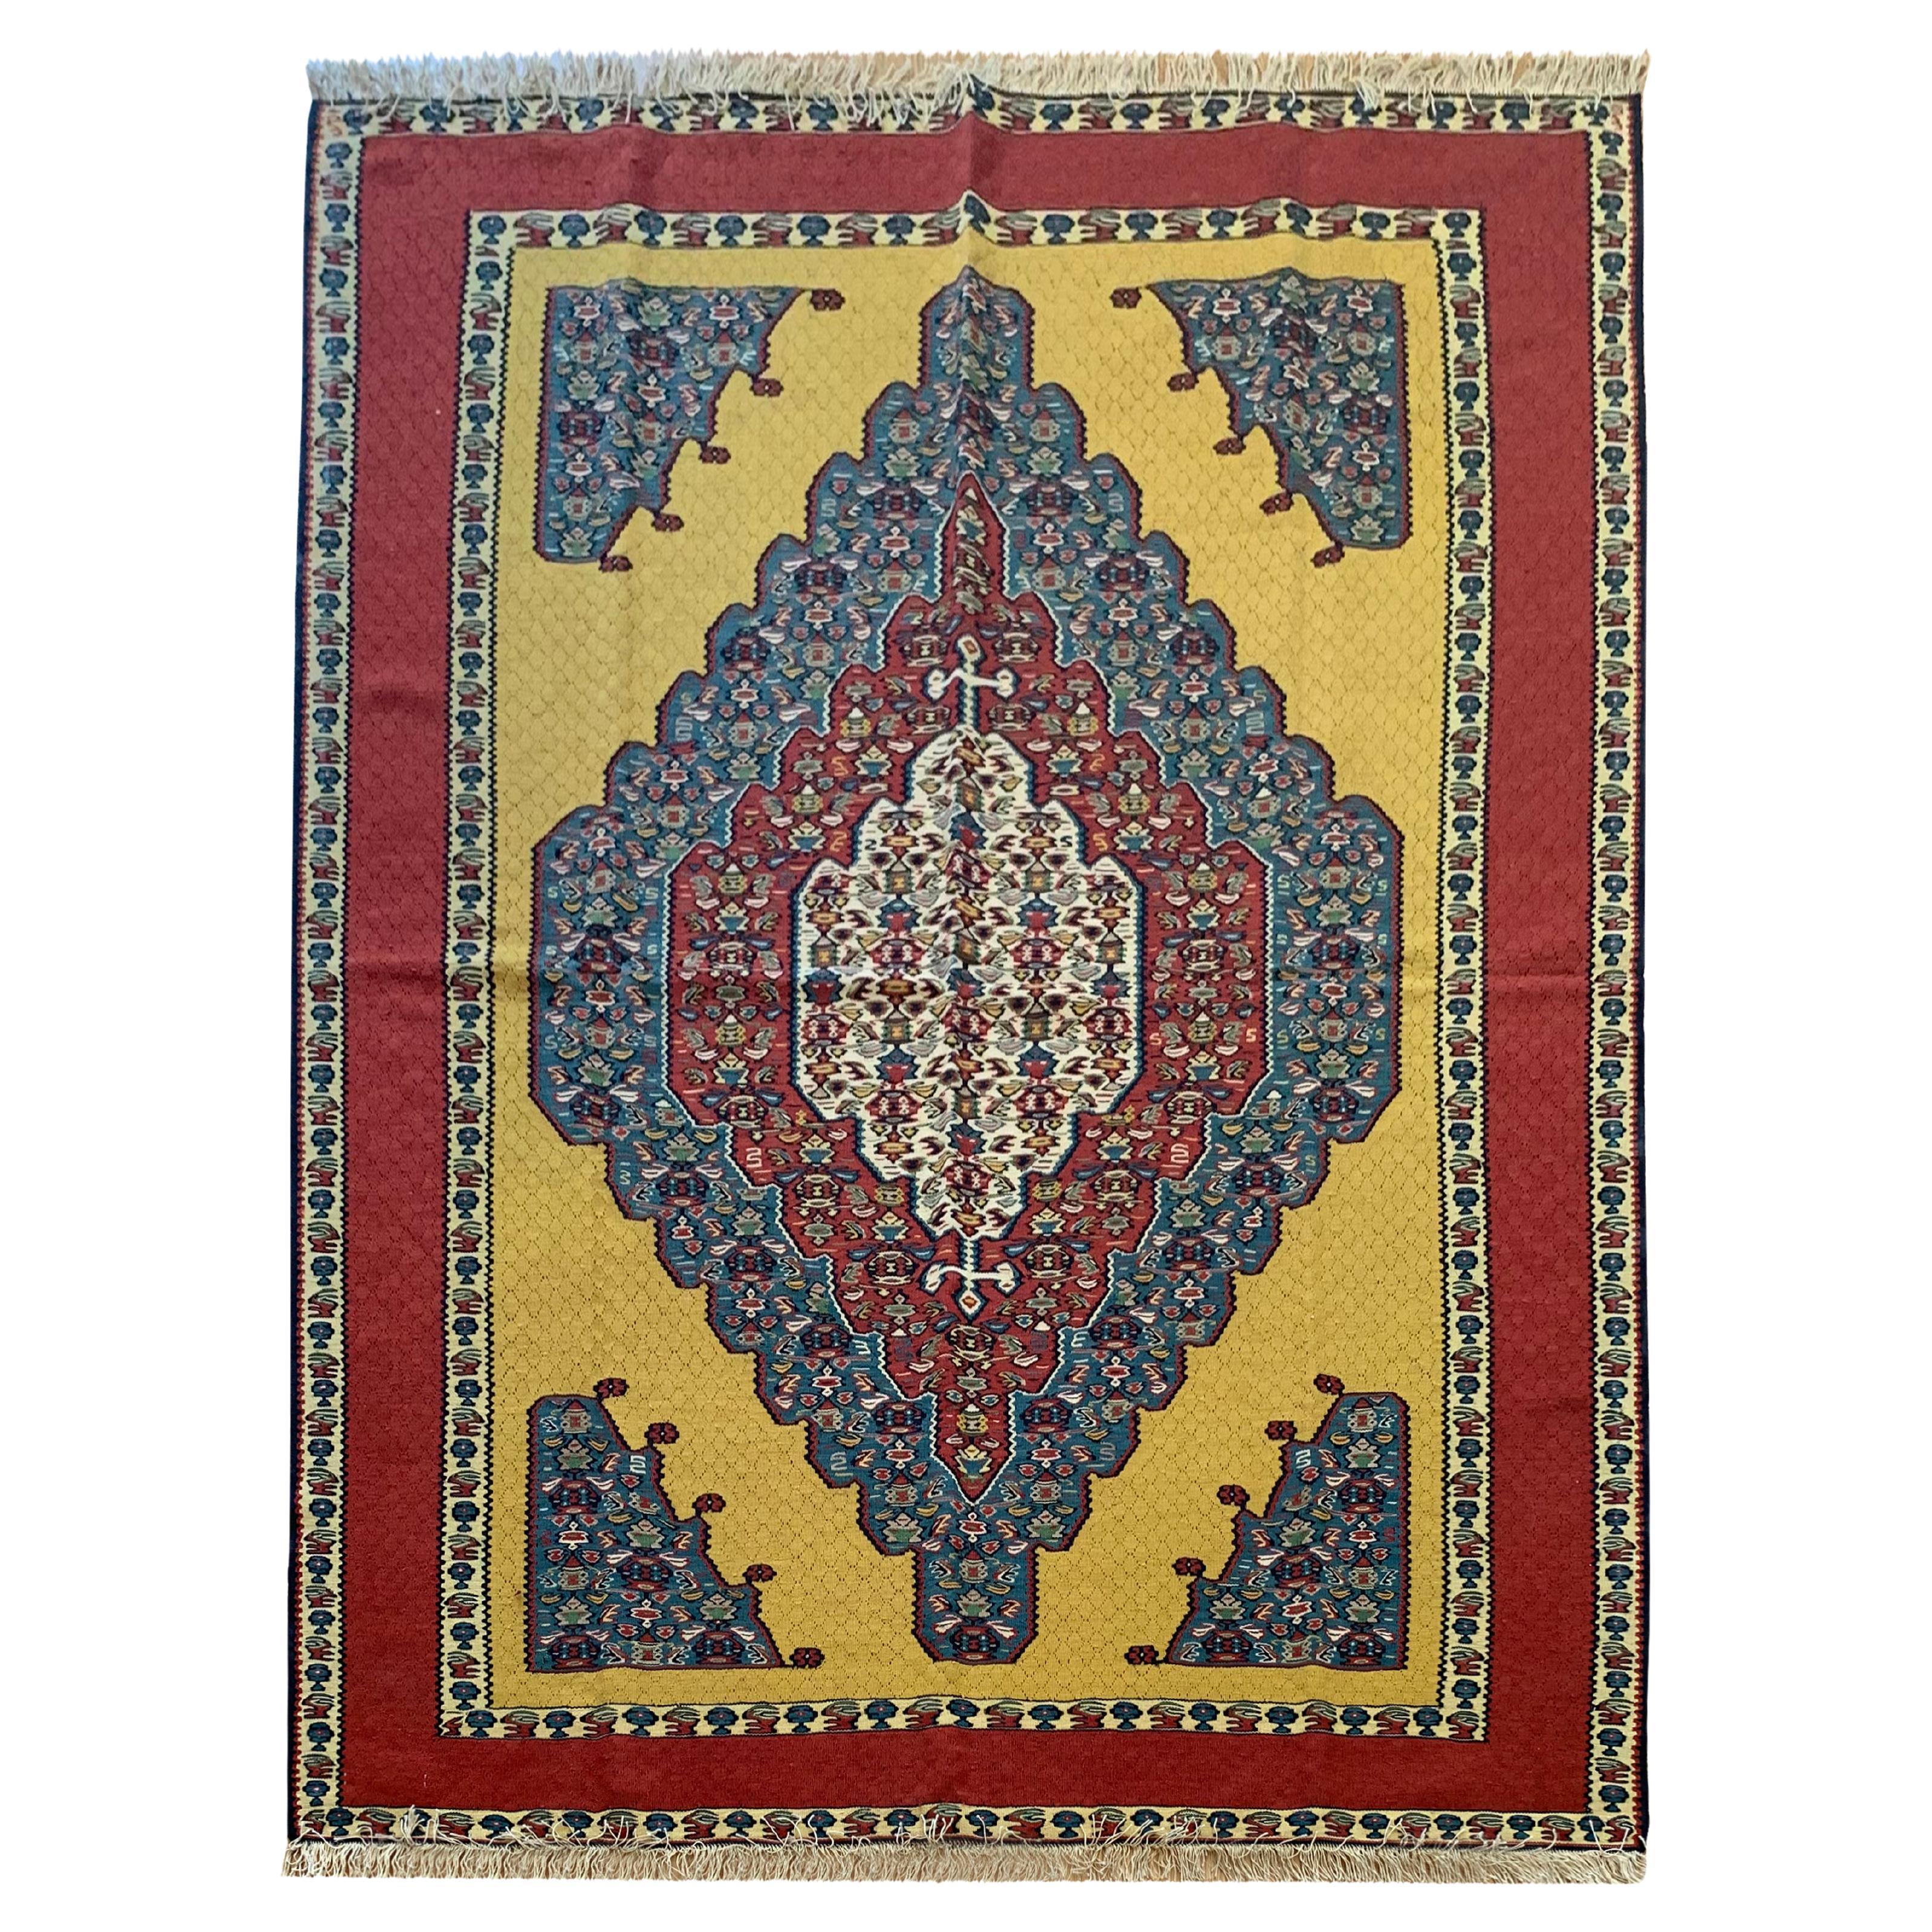 Handgewebter goldfarbener türkischer Teppich aus Seide und Wolle, Gelber Kelim-Teppich